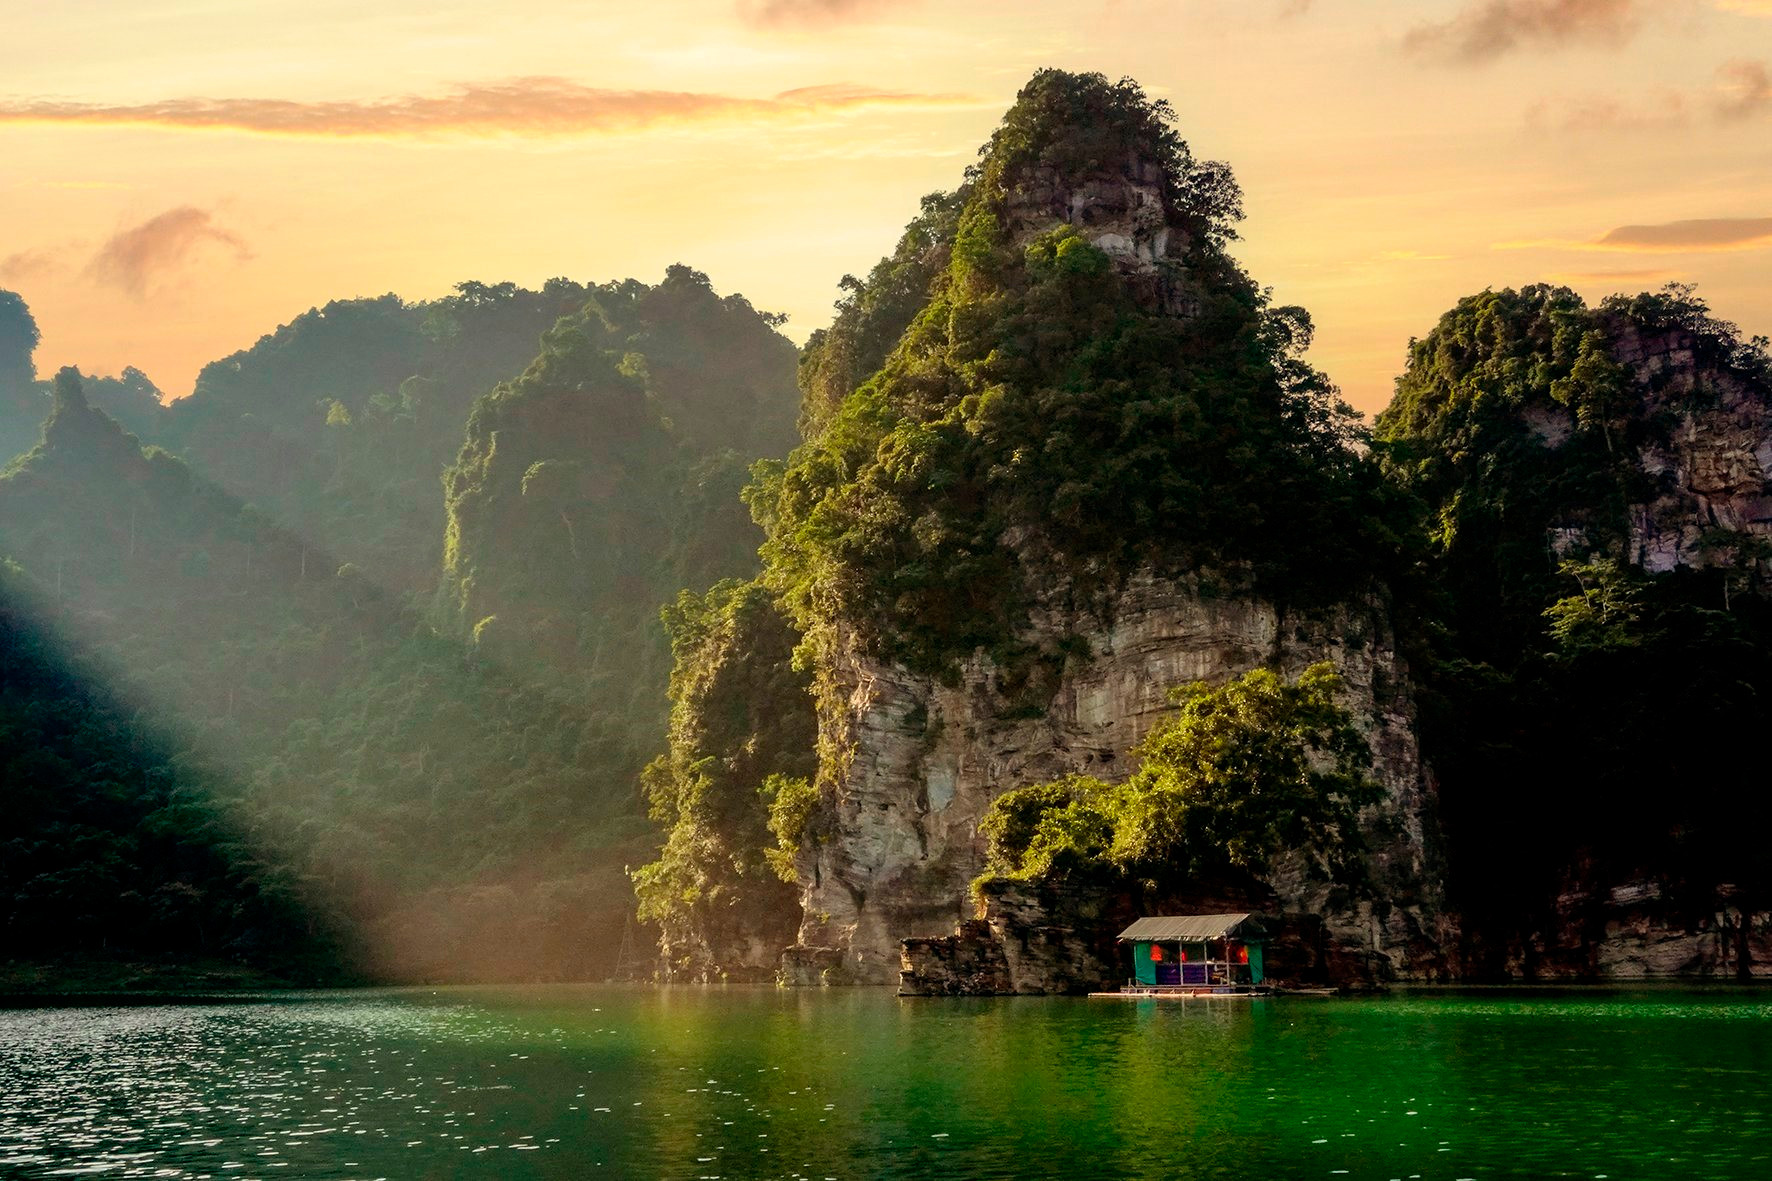 Hồ nước ngọt nhân tạo lớn nhất Tuyên Quang hiện ra đẹp như phim, có ngọn thác đổ, rừng nguyên sinh - Ảnh 11.